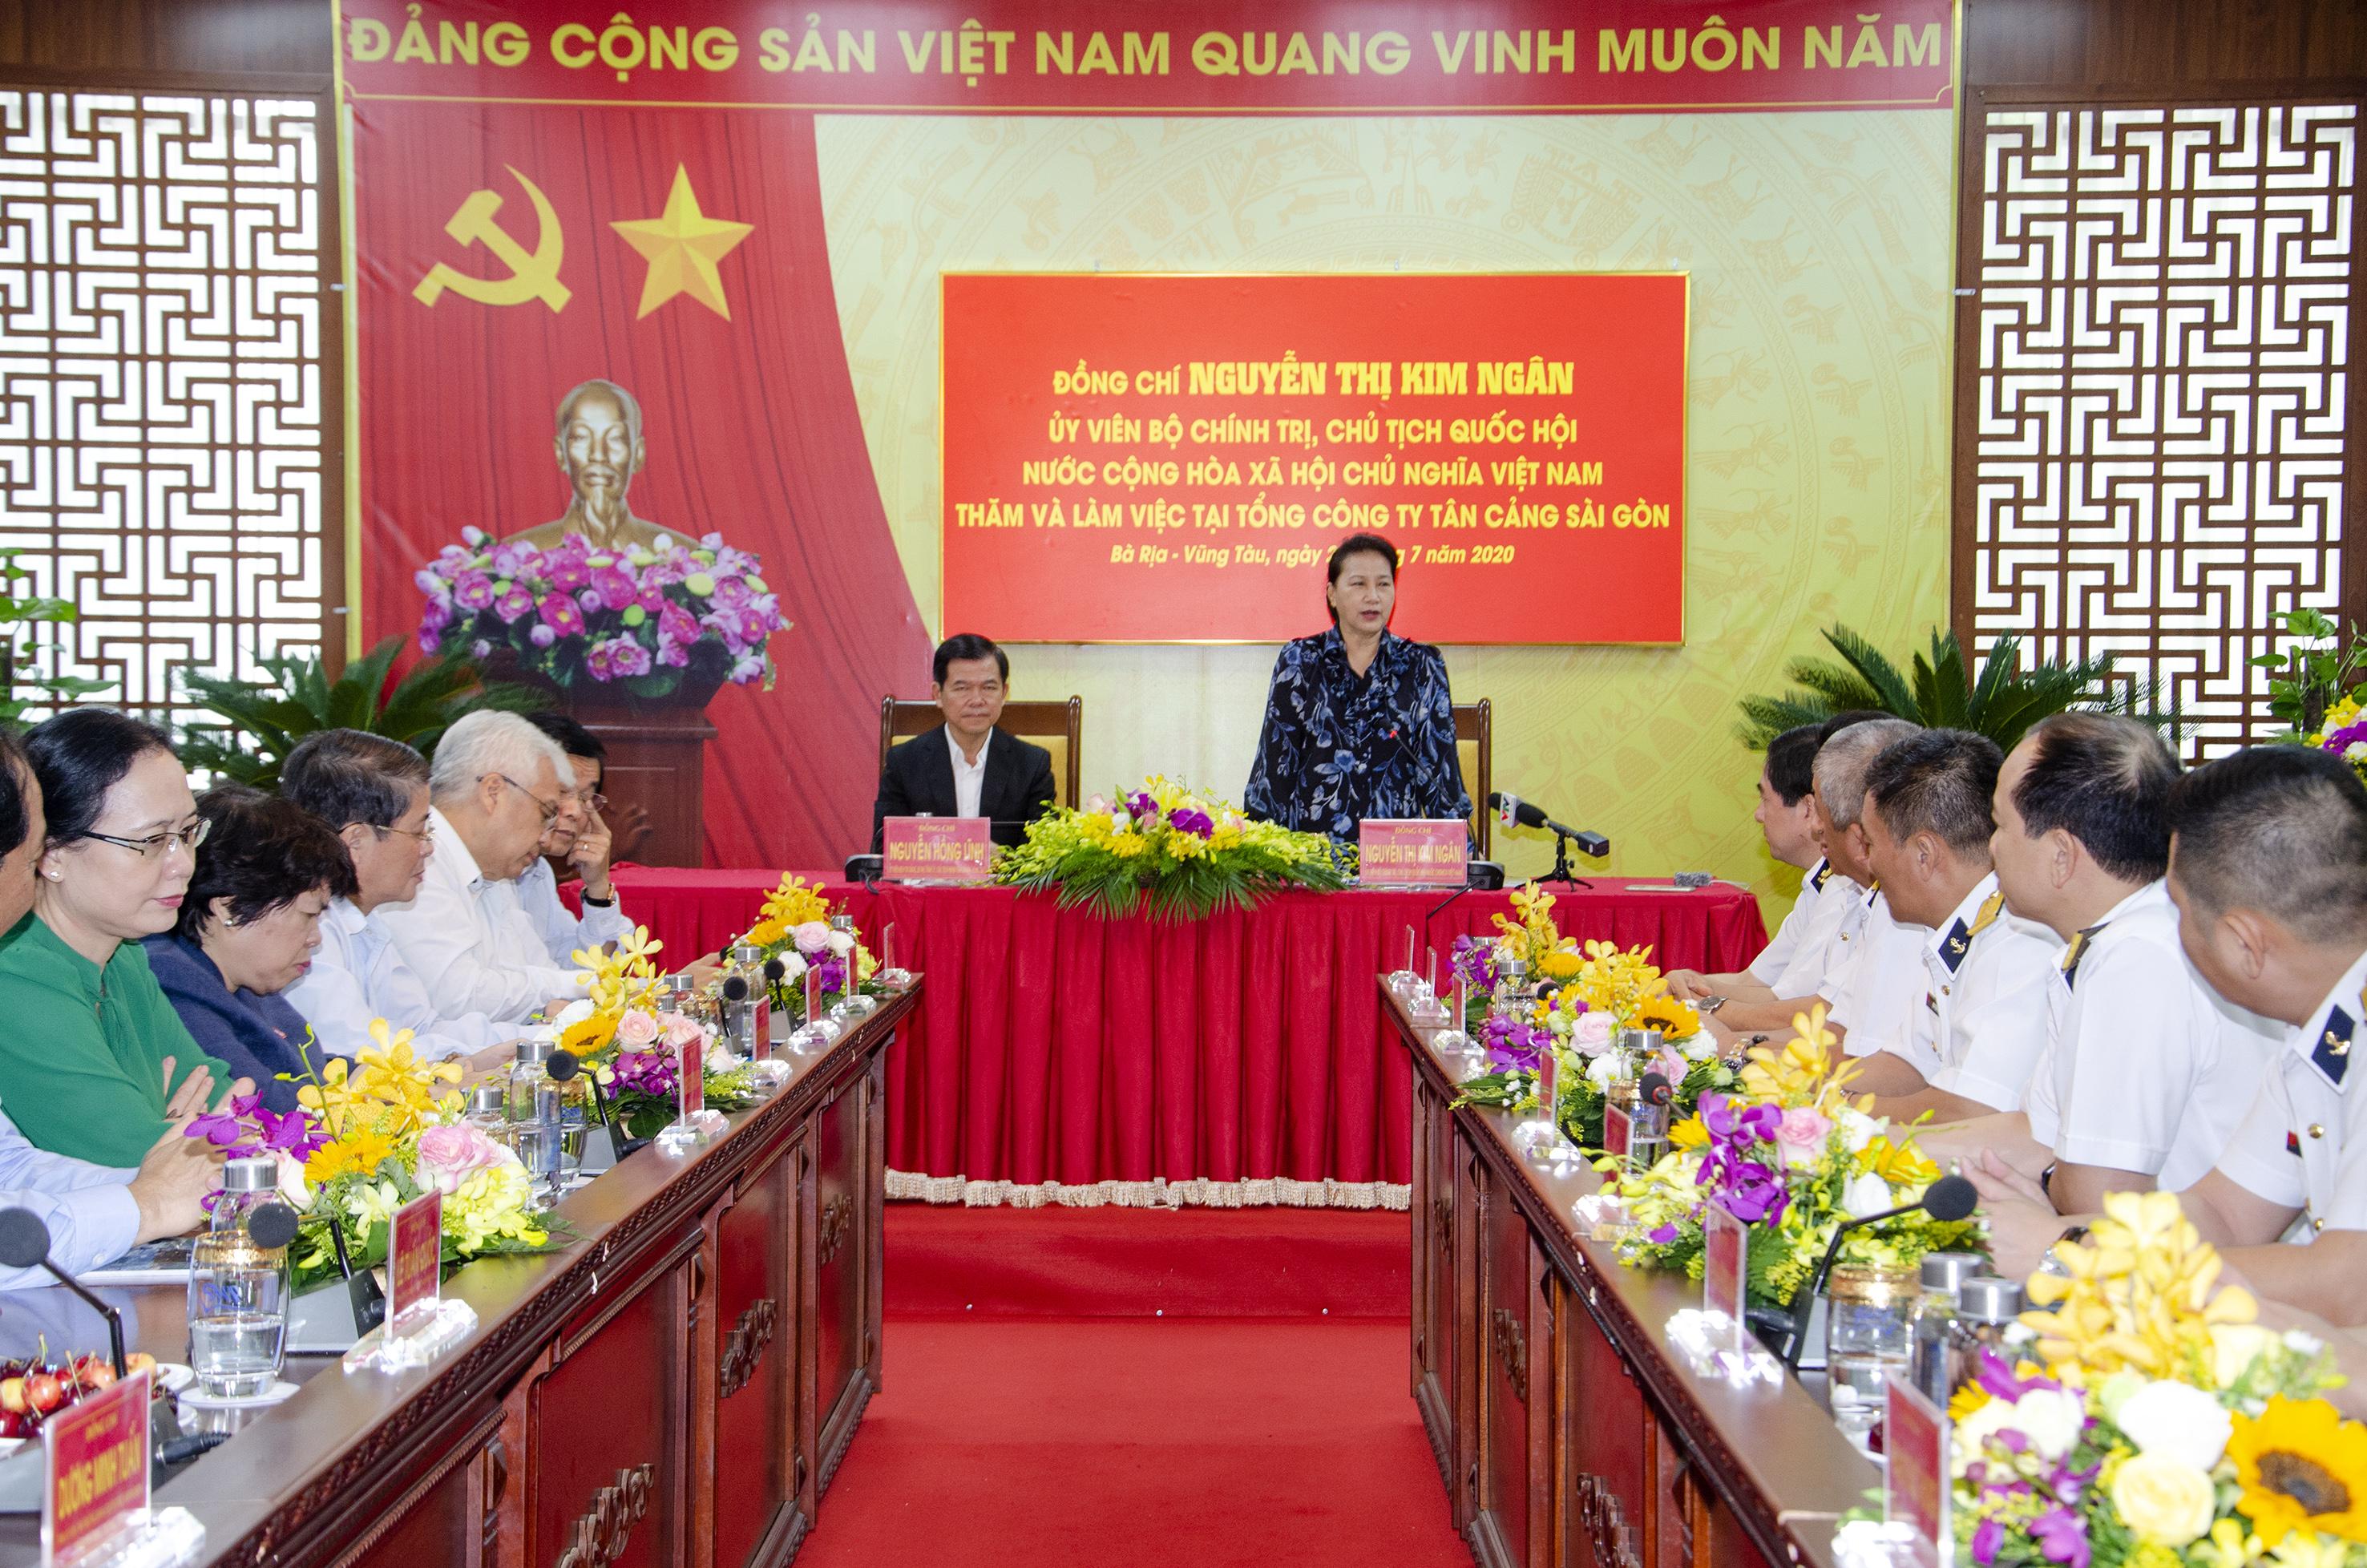 Chủ tịch Quốc hội Nguyễn Thị Kim Ngân phát biểu tại buổi làm việc với Tổng Công ty Tân Cảng Sài Gòn.